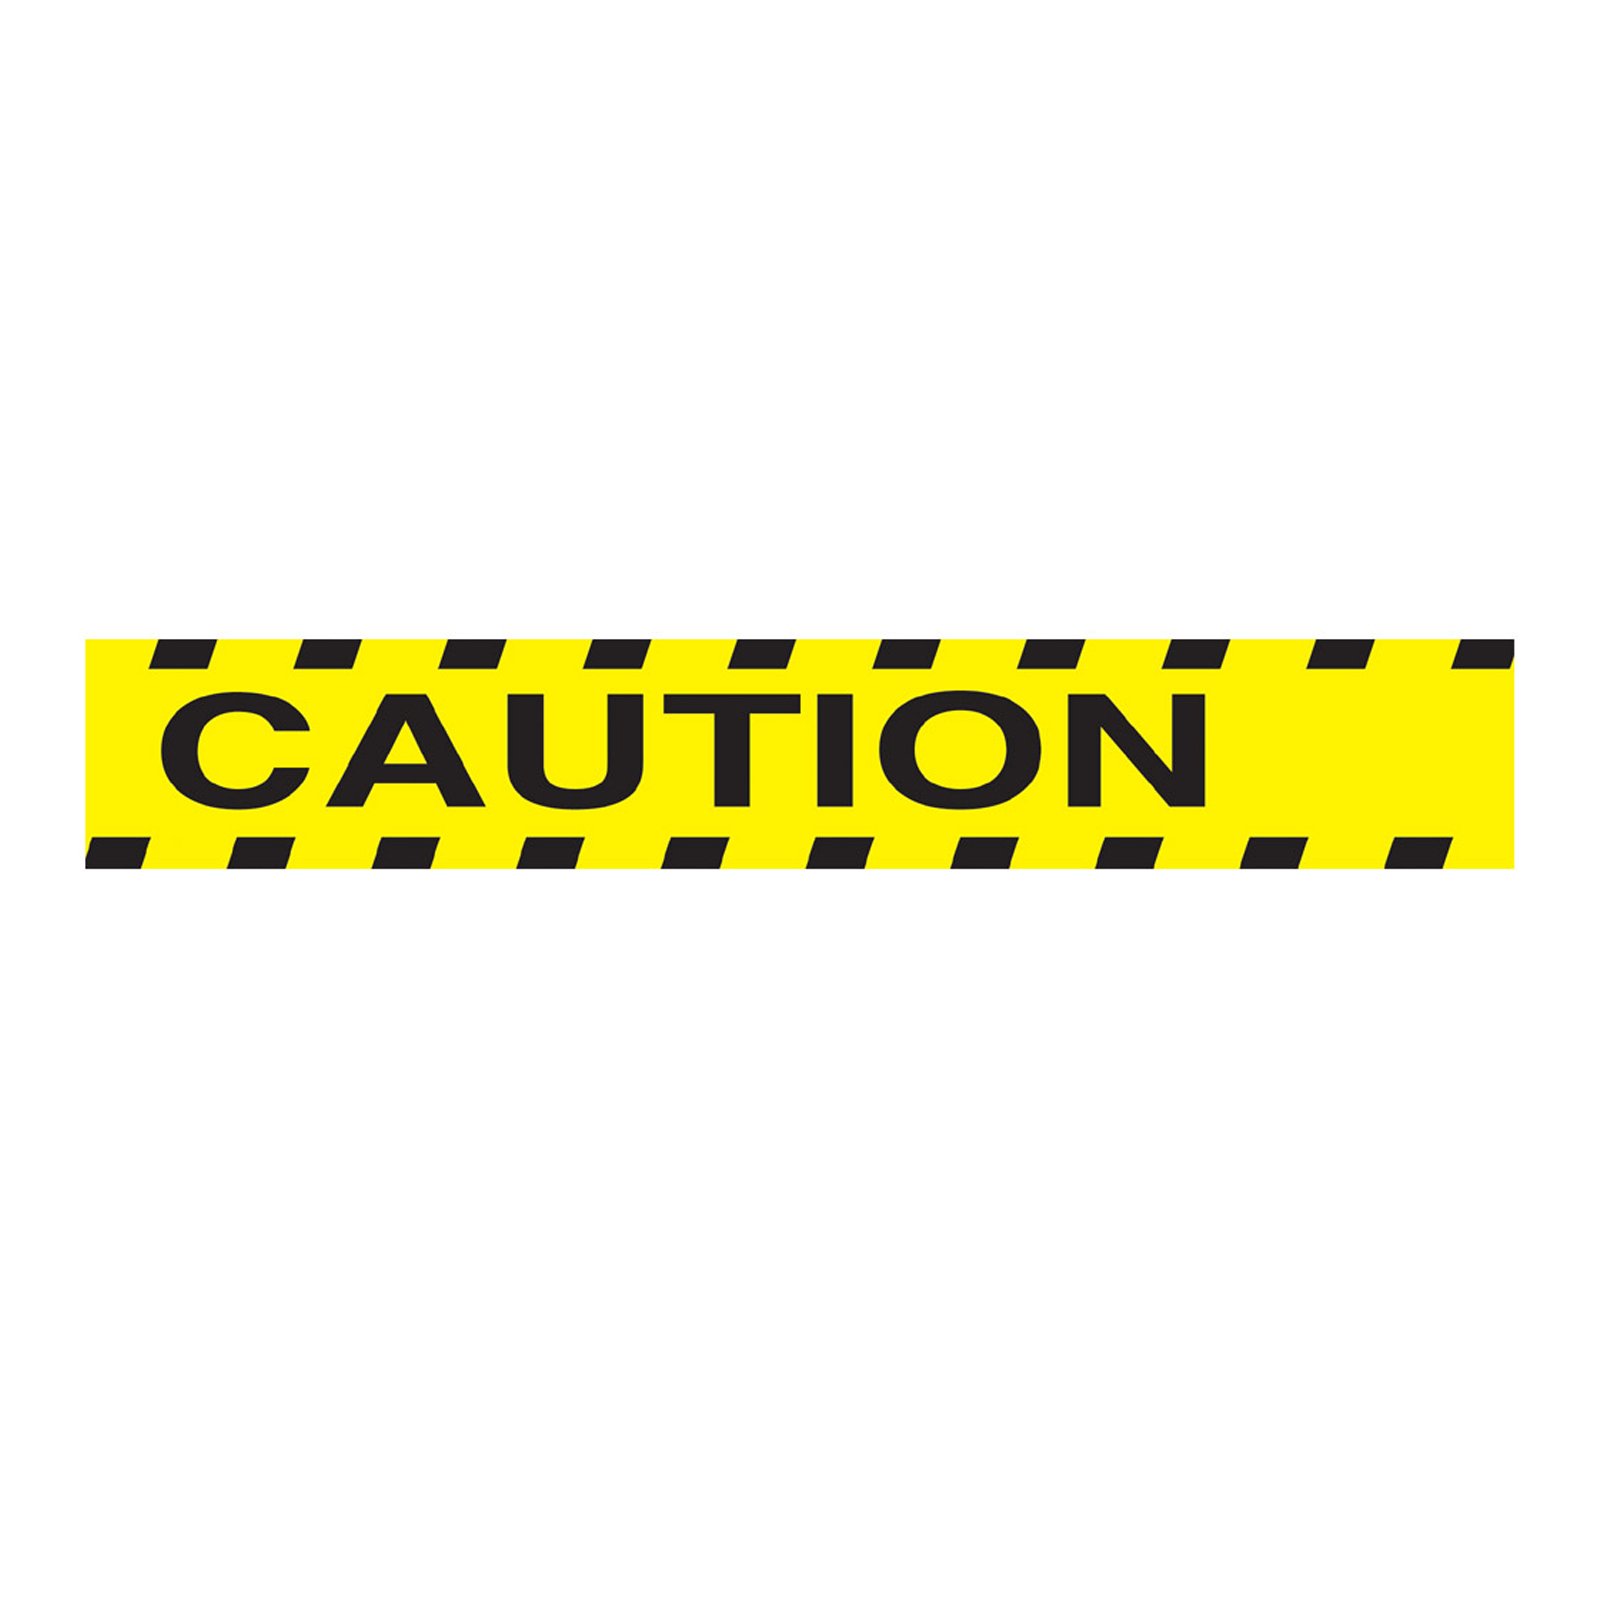 Caution Tape Border Clip Art Caution Tape Clip Art